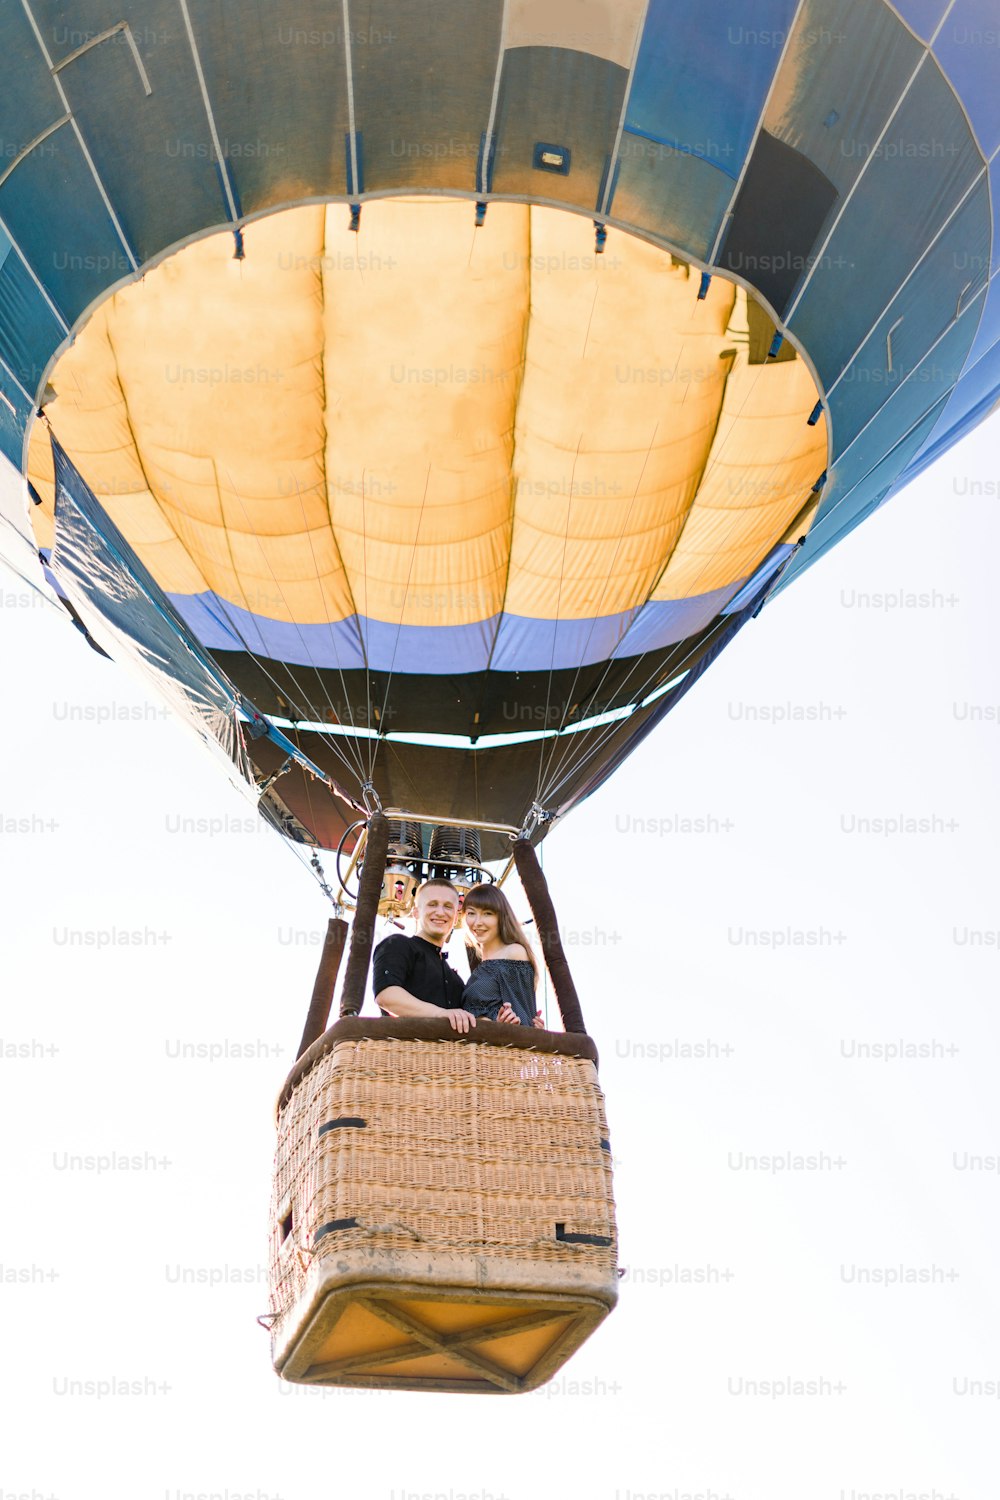 Sch�önes romantisches Paar umarmt sich im Korb des Heißluftballons und fliegt im Sommer sonnigen Abend. Romantisches Abenteuer, Liebe im Flugkonzept. Blick vom Land.